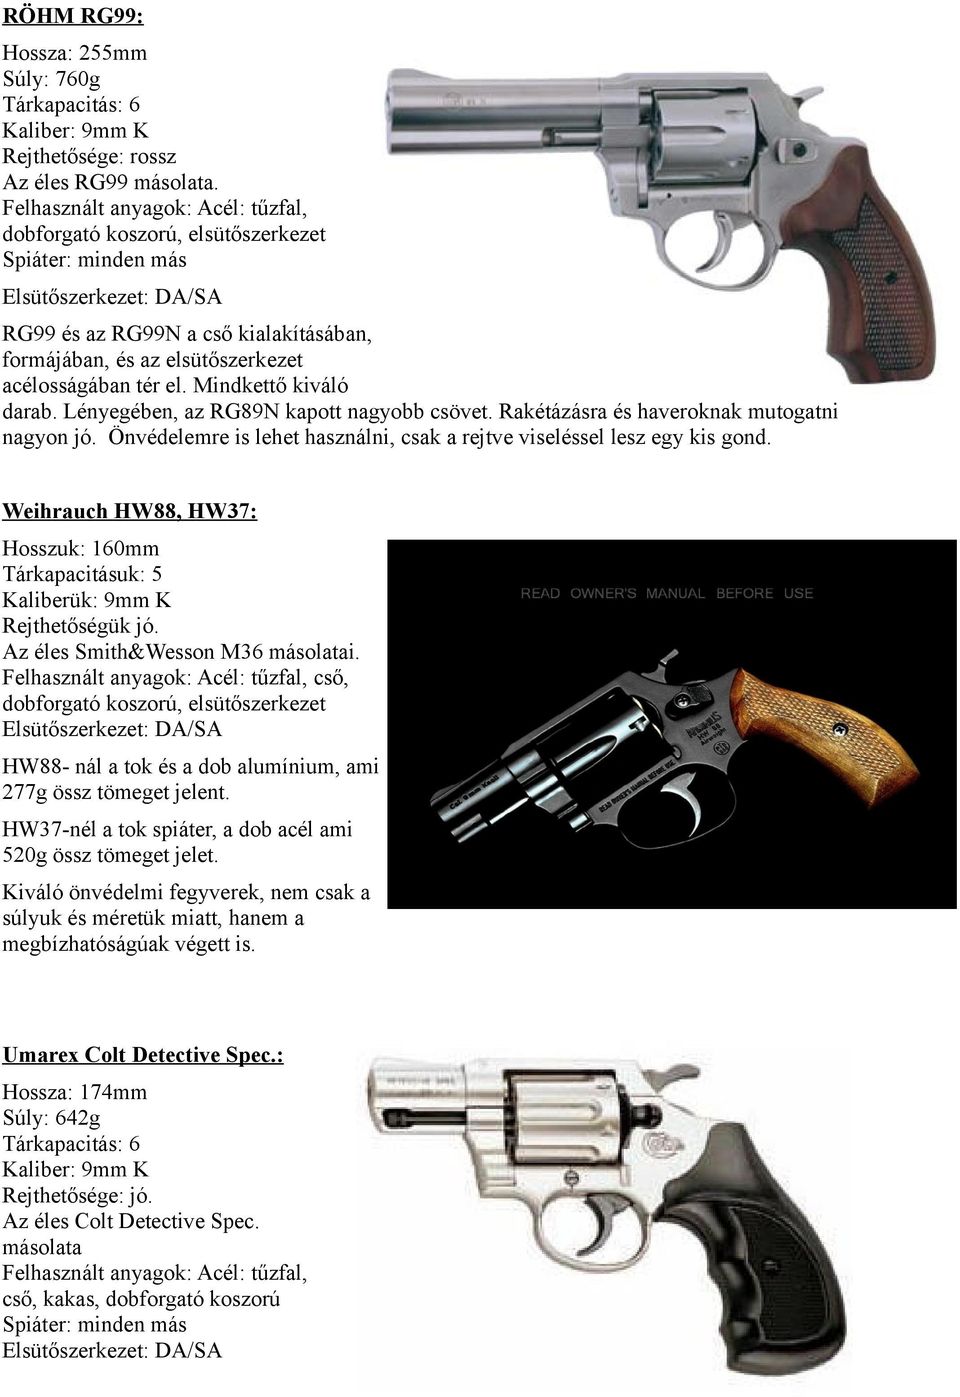 Ismertetjük a revolver fegyvereket. (Más néven: Forgótáras pisztolyok) -  PDF Ingyenes letöltés